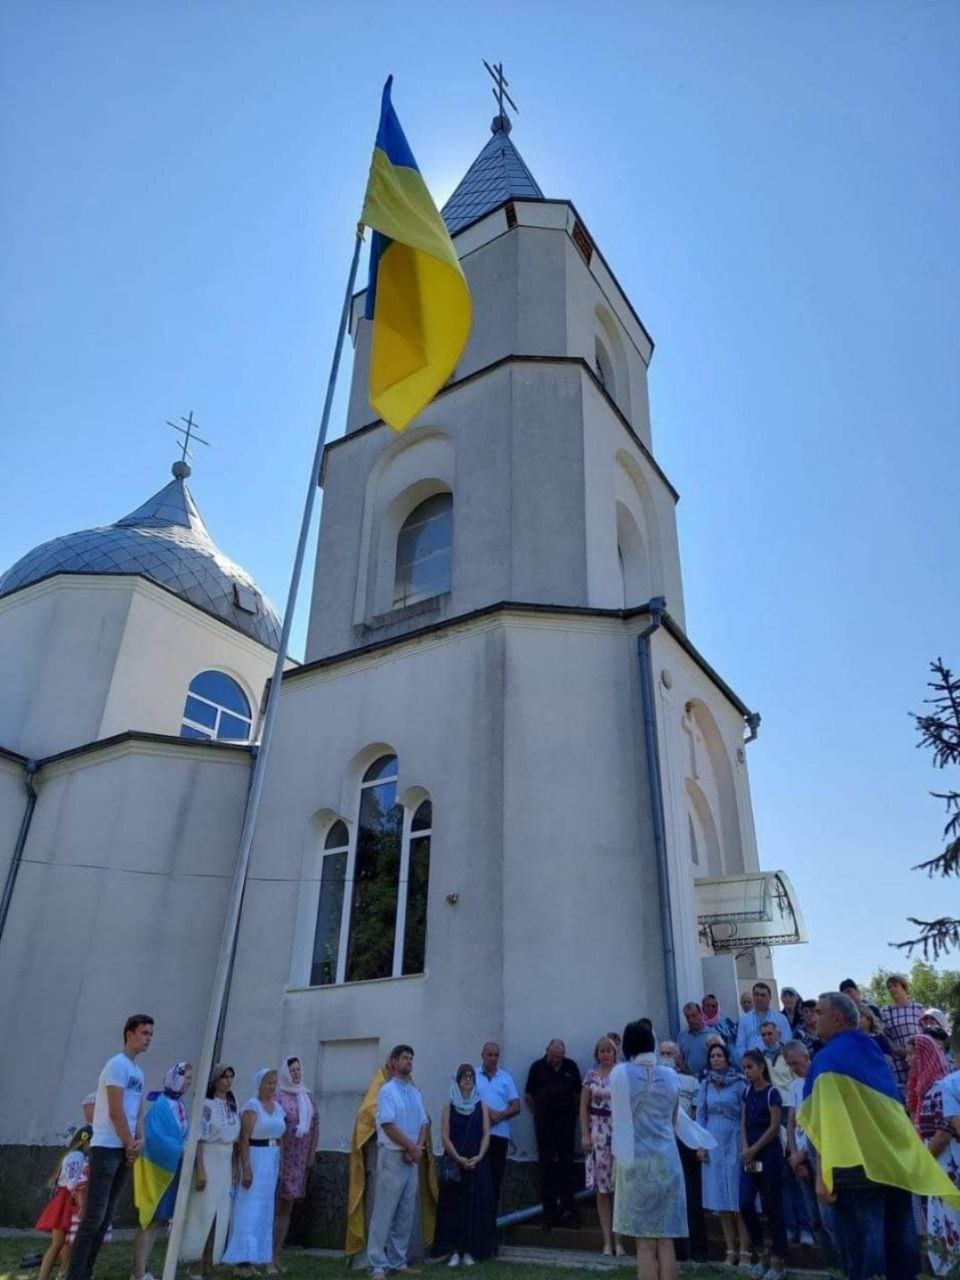 Про шлях становлення Православної церкви України в Бессарабії та її майбутнє - зі священником Саратського храму Владиславом Шіманом